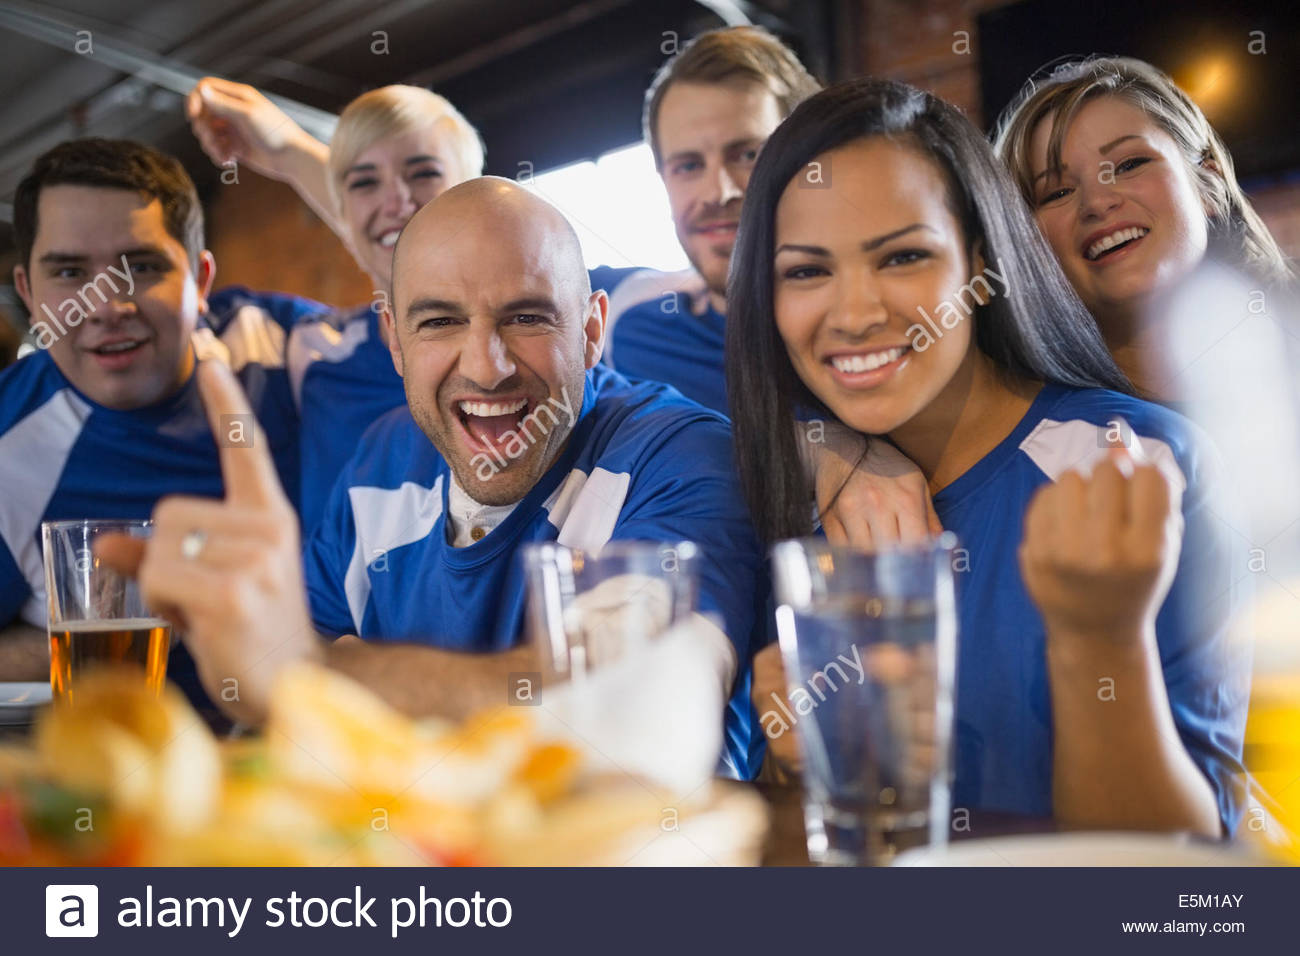 Les fans de sport cheering in pub Banque D'Images